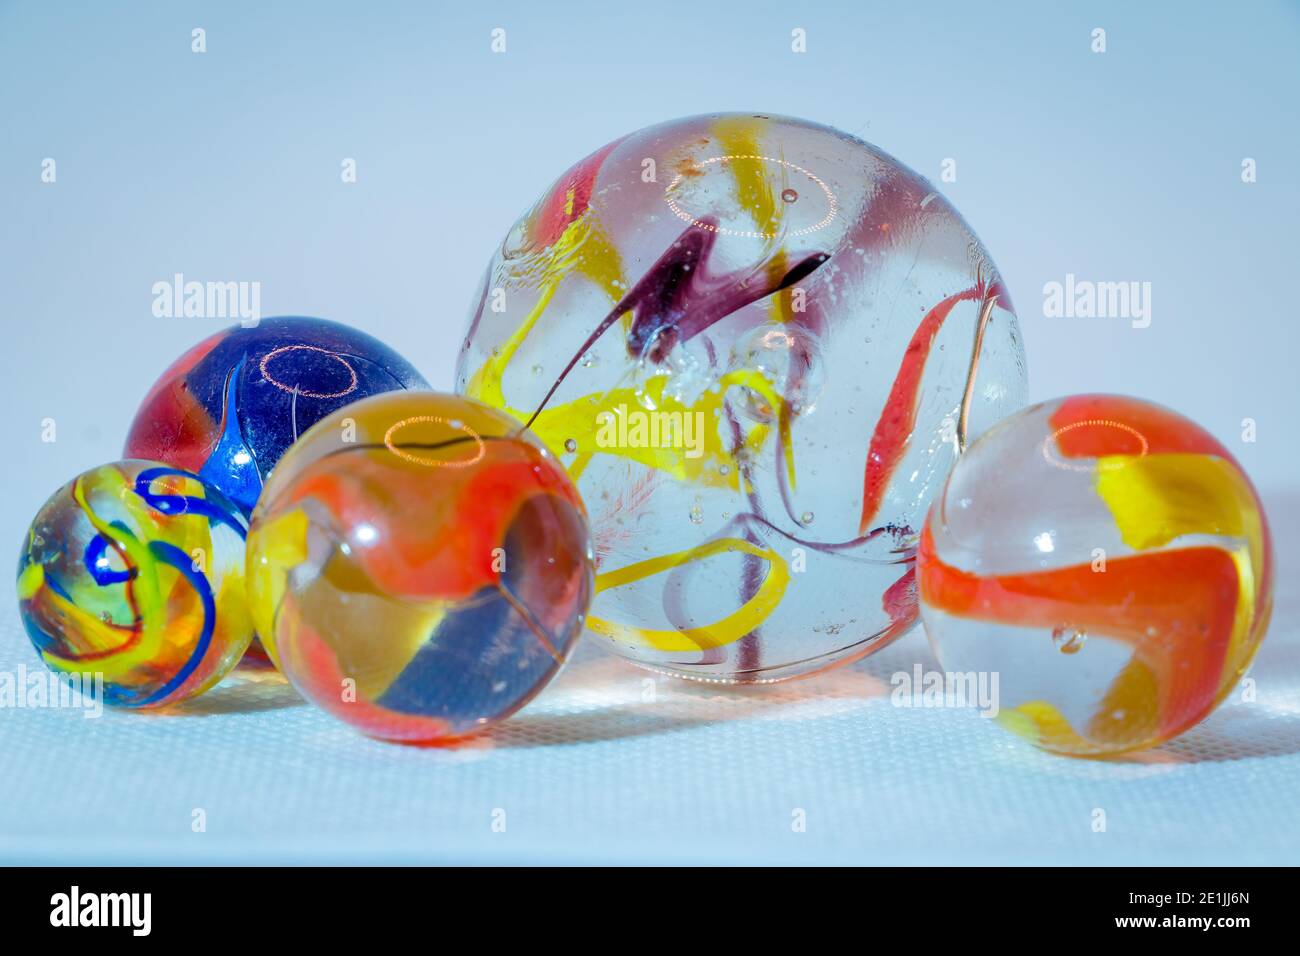 Marmi di vetro di vetro traslucido con belle nebbie colorate nelle palle di vetro, giocattoli per bambini Foto Stock